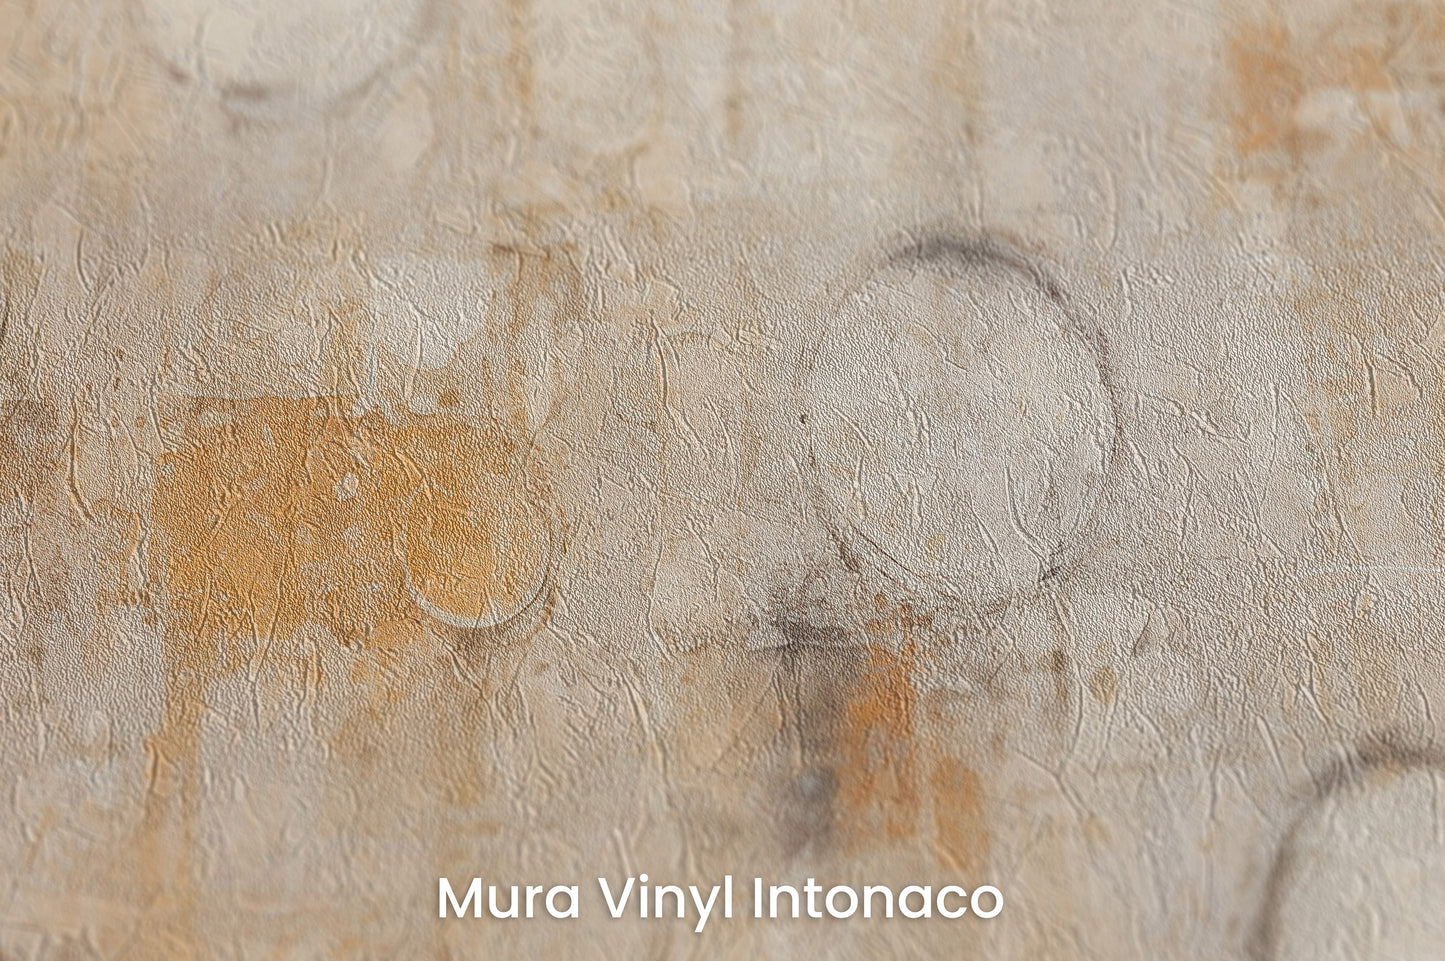 Zbliżenie na artystyczną fototapetę o nazwie RUSTIC ORBITAL IMPRESSIONS na podłożu Mura Vinyl Intonaco - struktura tartego tynku.